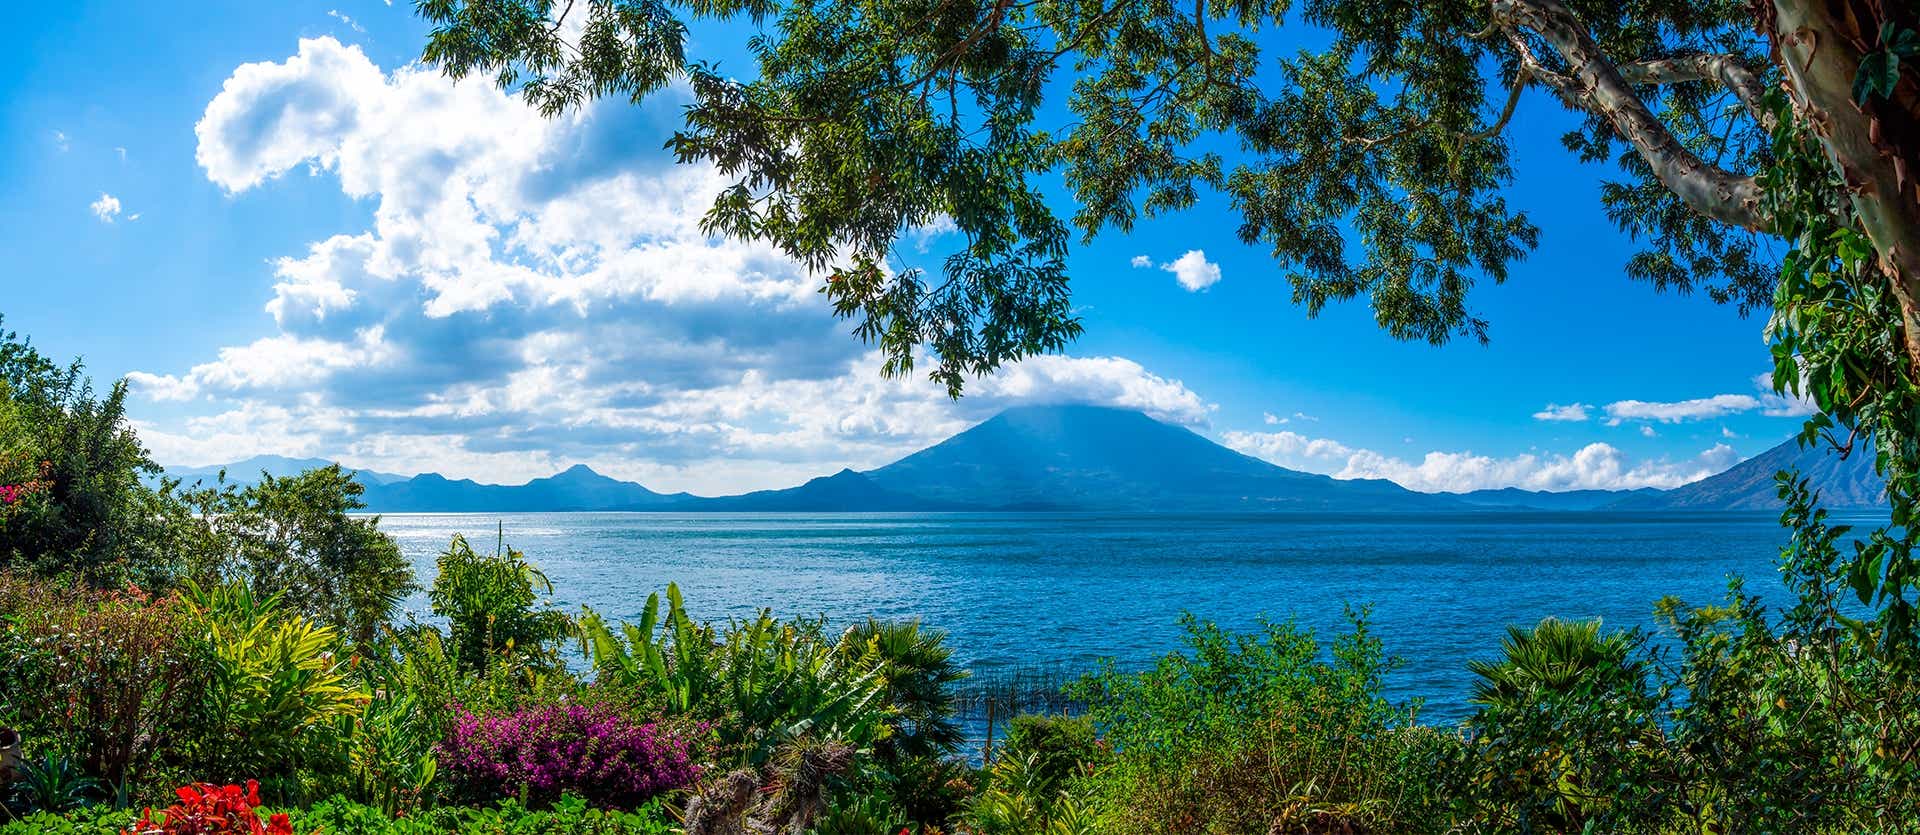 Lago Atitlán <span class="iconos separador"></span> Guatemala